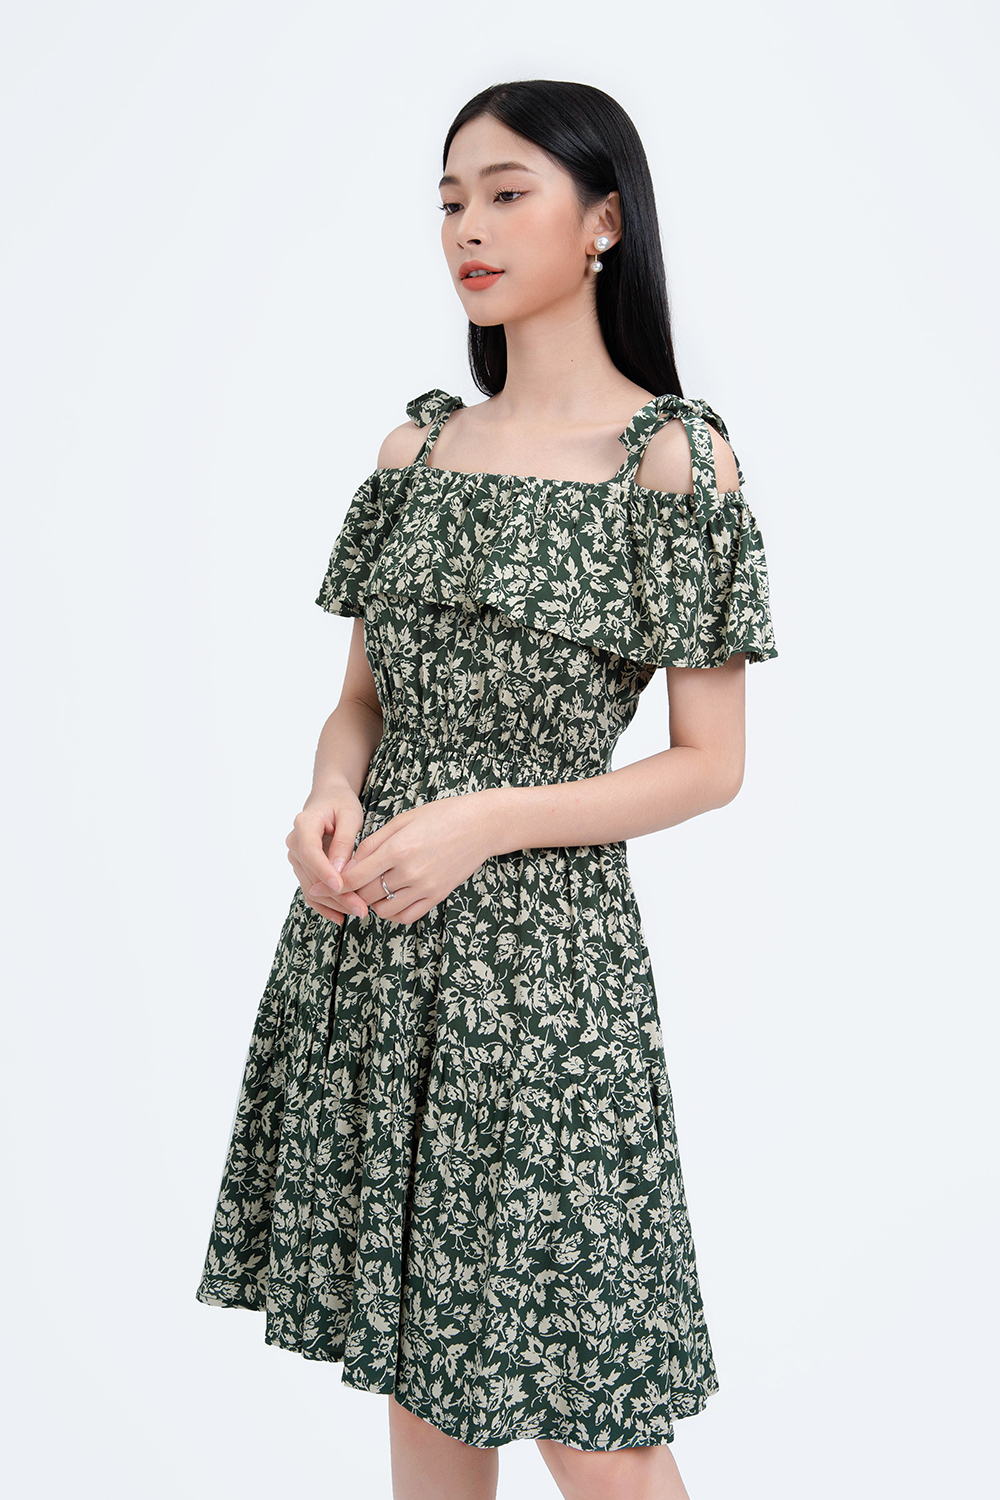 Gợi ý những mẫu váy bánh bèo dễ thương cho nàng công sở  IVY moda